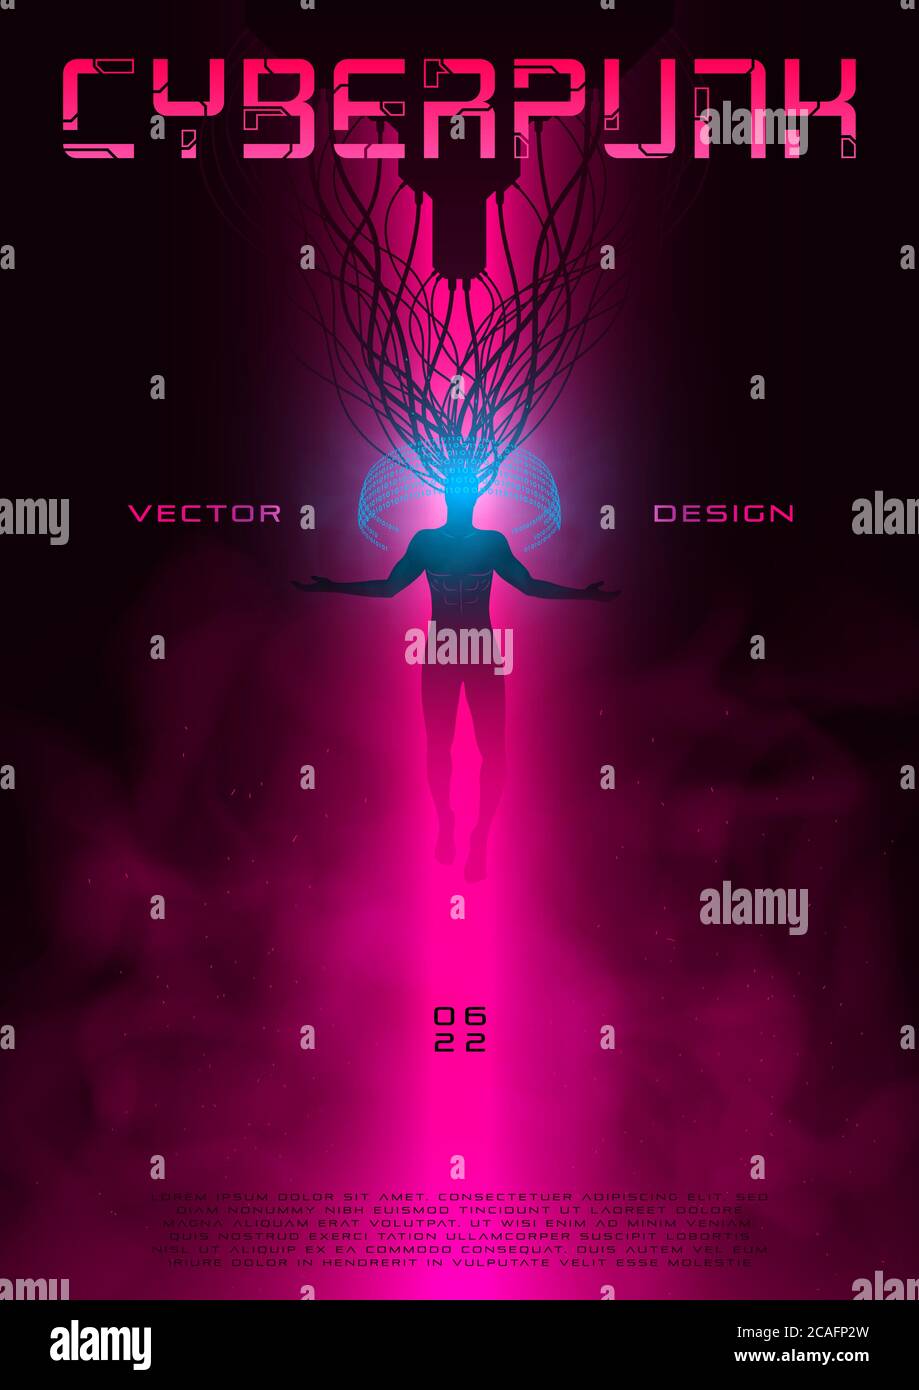 Poster futuristico cyberpunk con un uomo in aumento connesso alla realtà virtuale. Synthwave layout vivace per eventi musicali. Concetto fantascientifico. Design per volantino Illustrazione Vettoriale